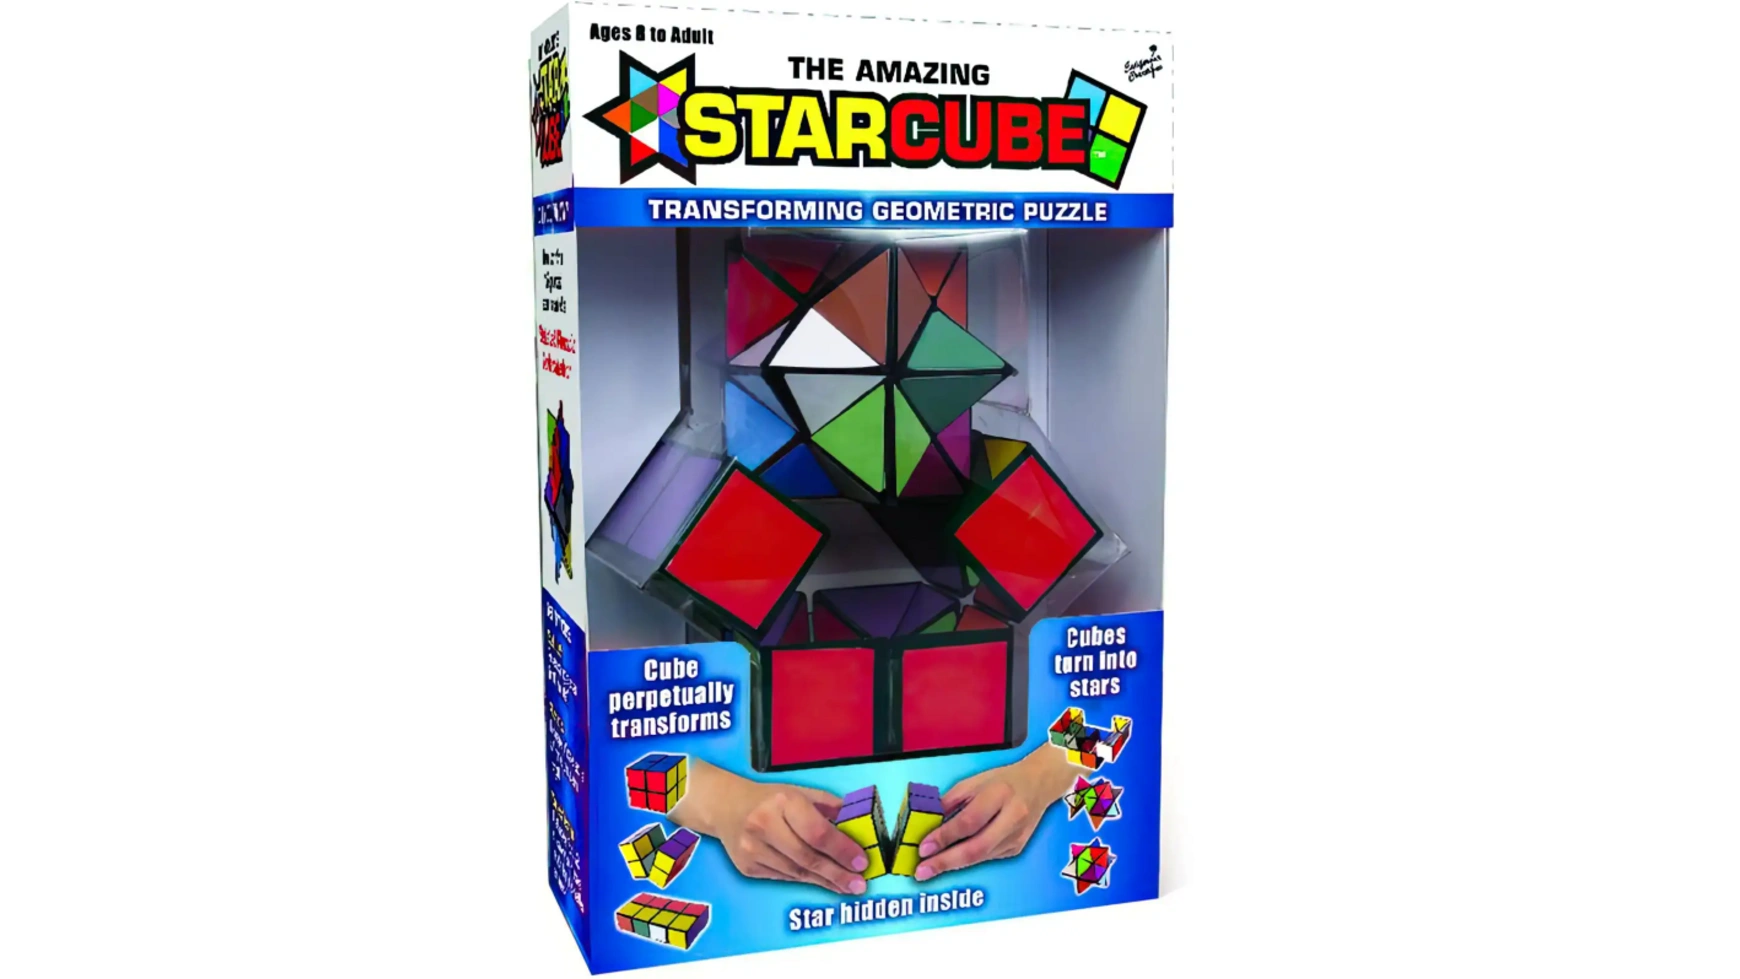 Звездный волшебный куб Elliot StarCube игра на ловкость и терпение, 5,5 х 5,5 см, красочный магнитный магический куб moyu weilong wrm v9 профессиональная игрушка головоломка 3x3x3 венгерский с уф магнитным сердечником 3x3x3 кубик рубика